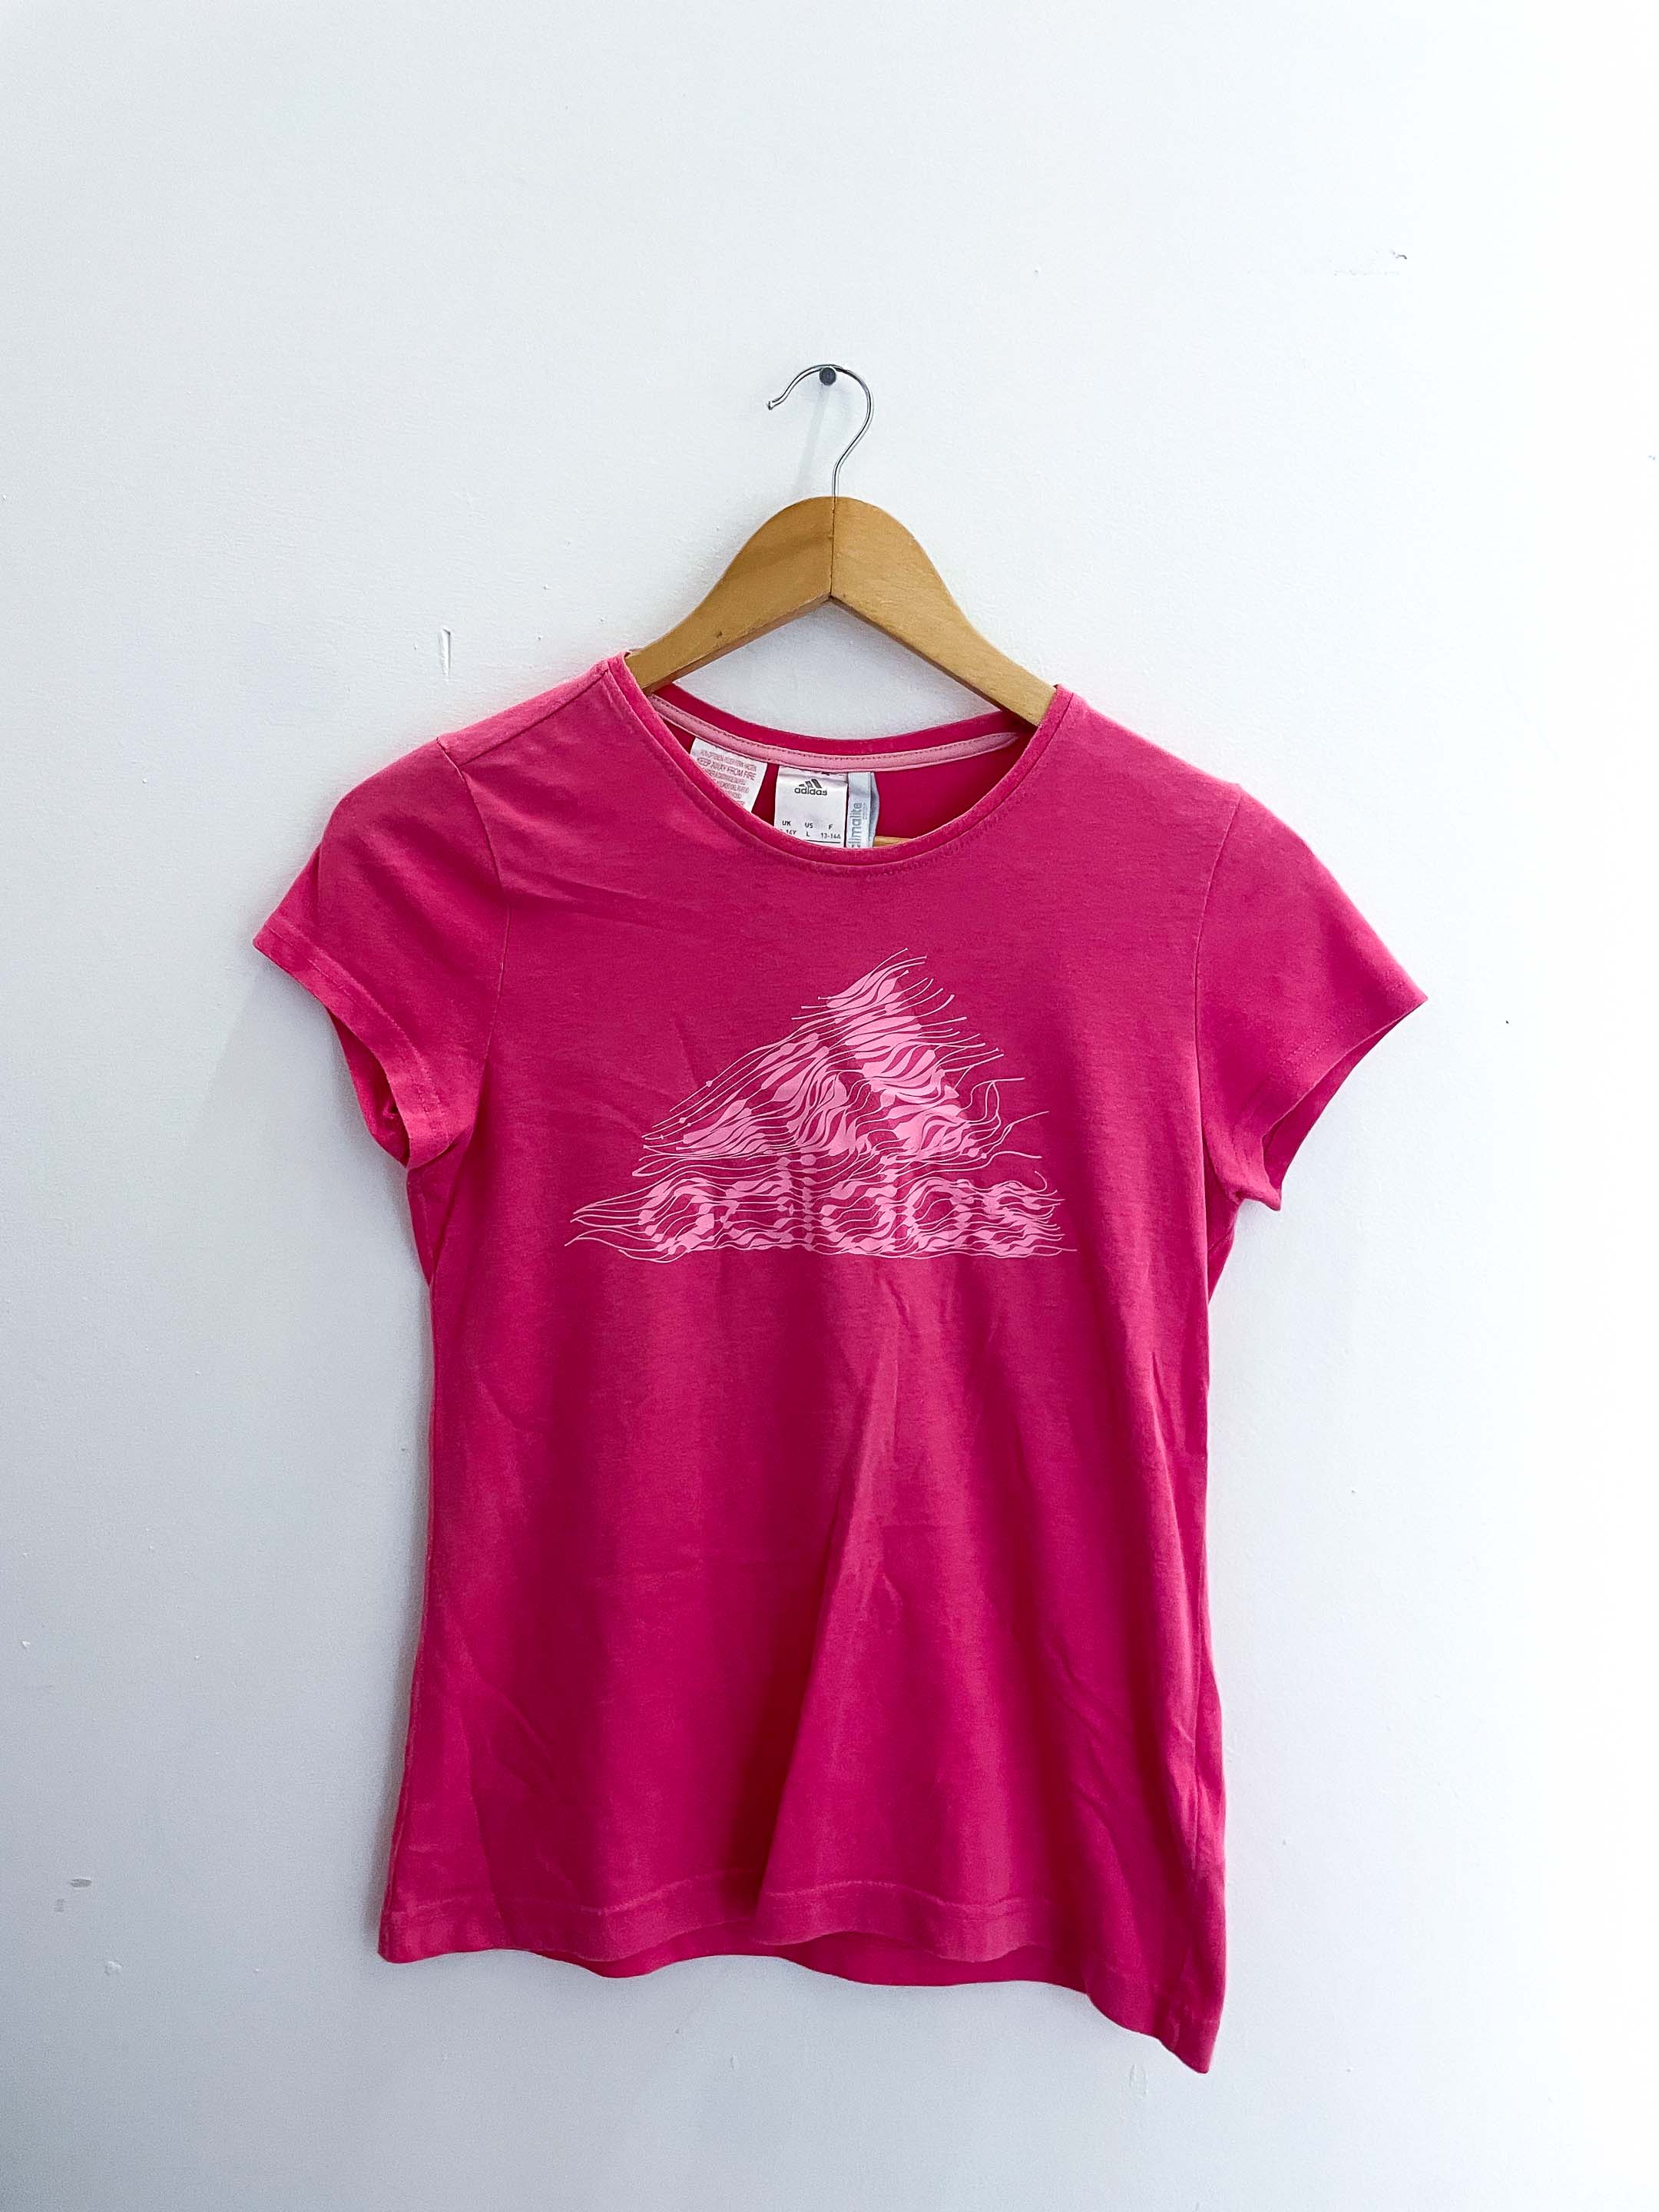 Vintage small pink adidas women tshirt